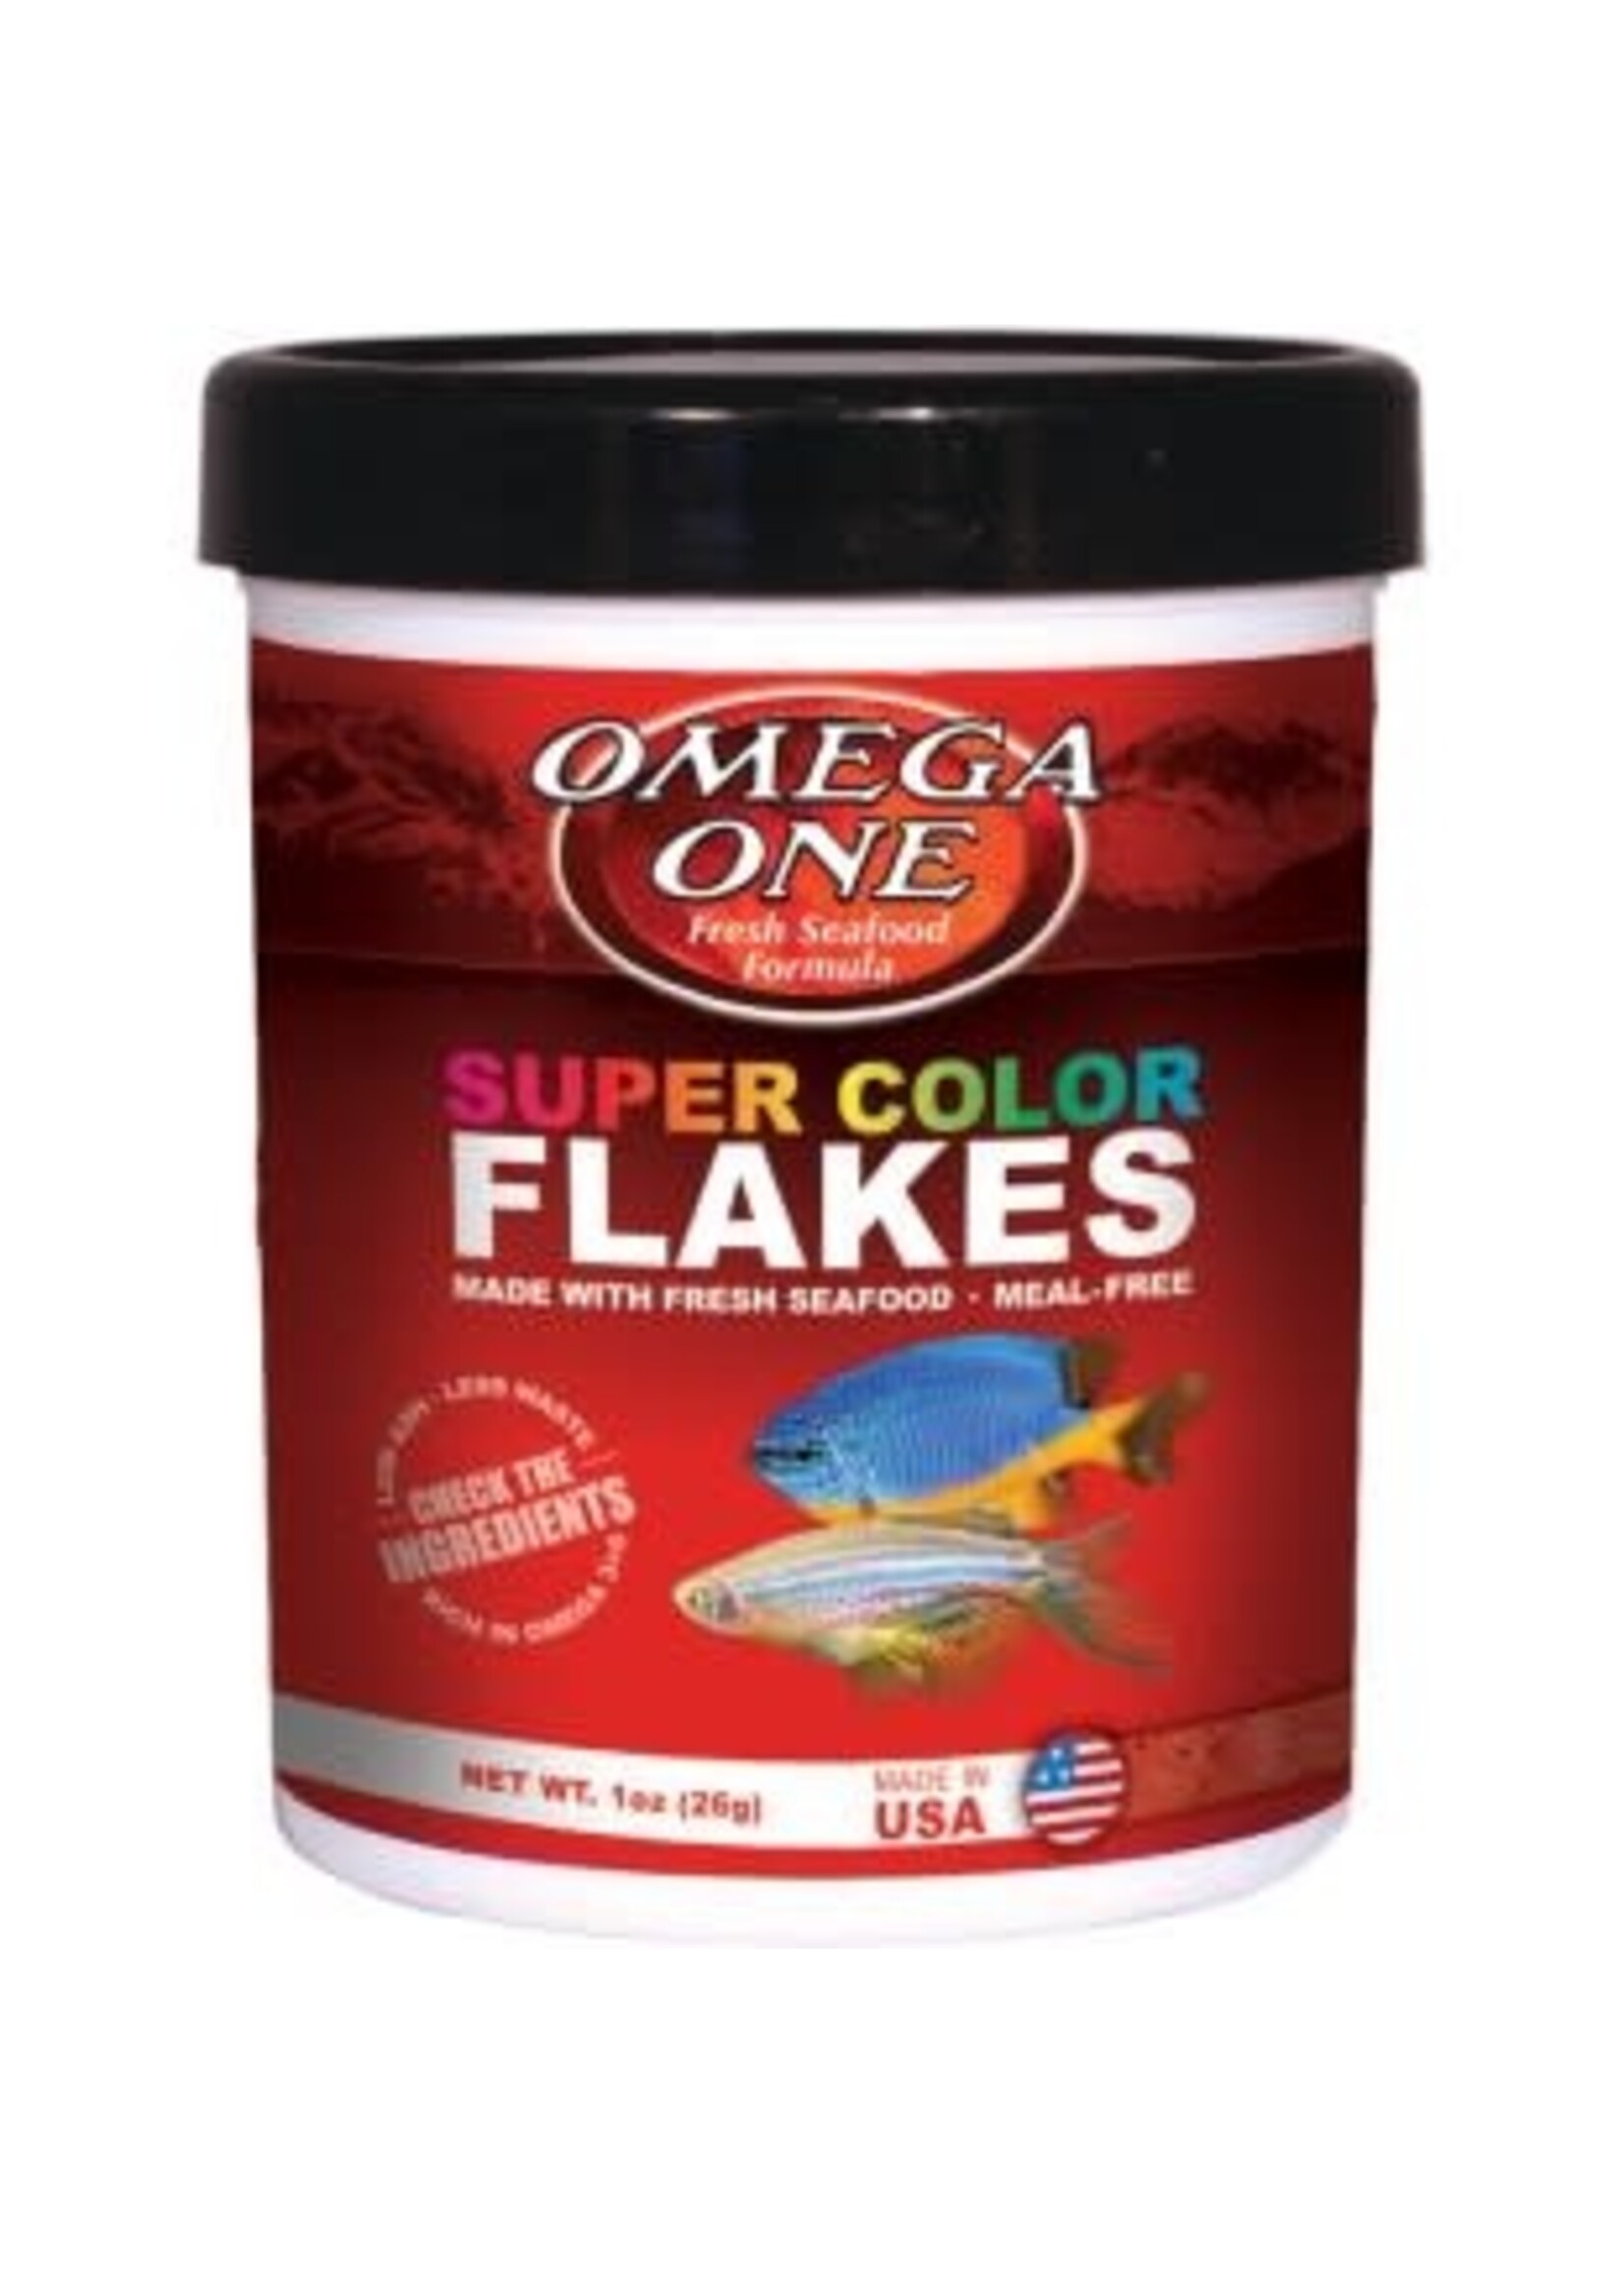 Omega One Omega One Super Color Flakes